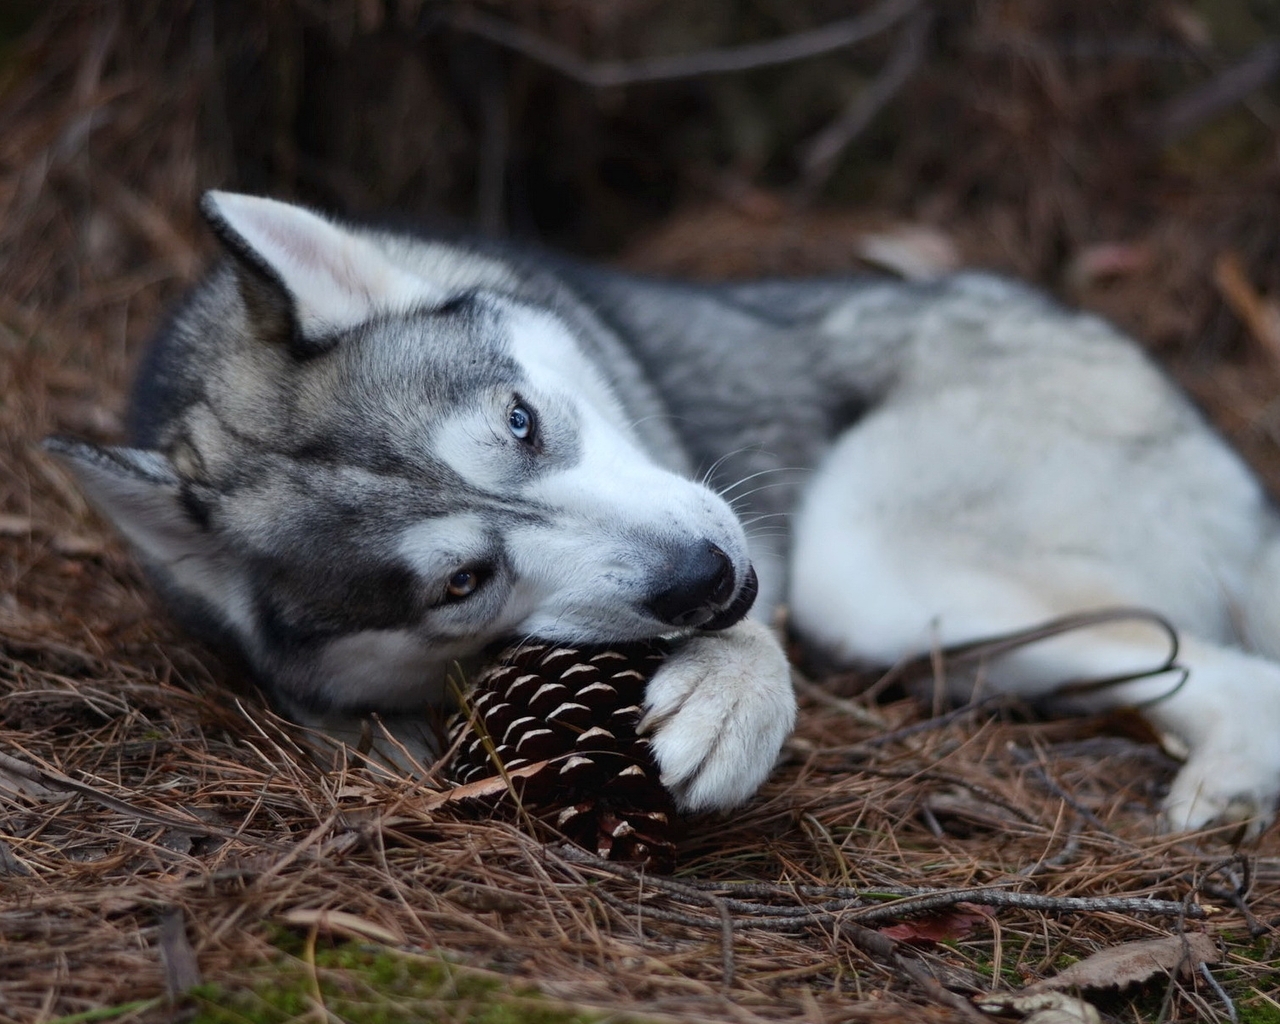 Картинка: Собака, Хаски, лежит, грызет, шишка, лес, иголки, почва